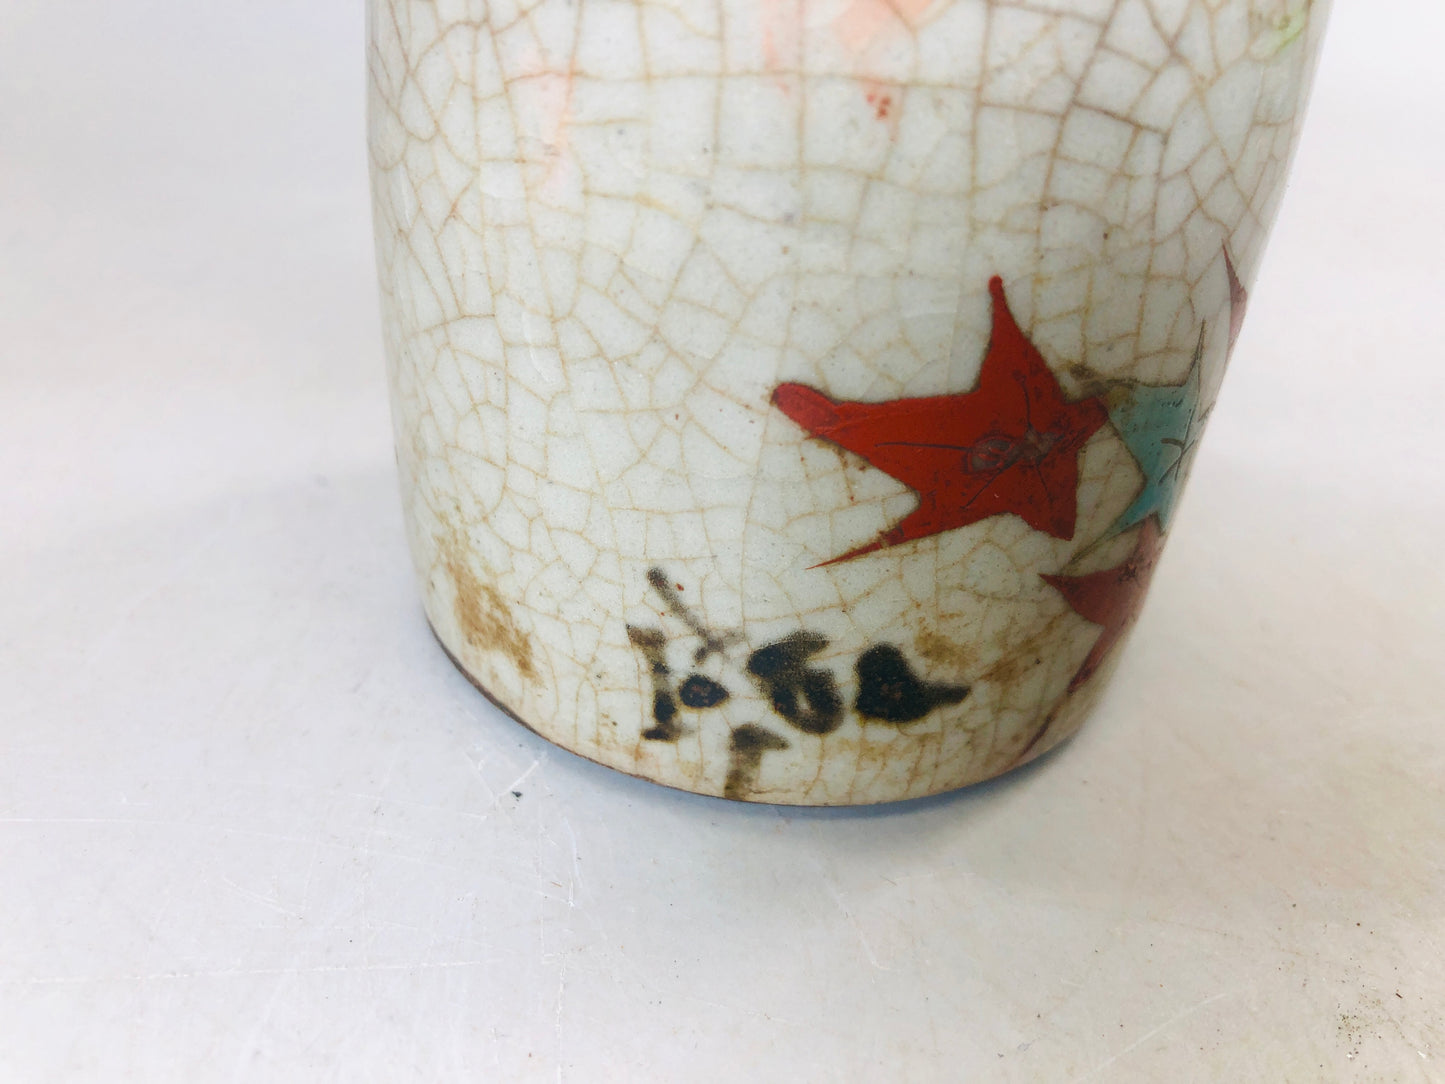 Y5775 CHOUSHI Inuyama-ware sake bottle autumn leaves signed Japan antique pot